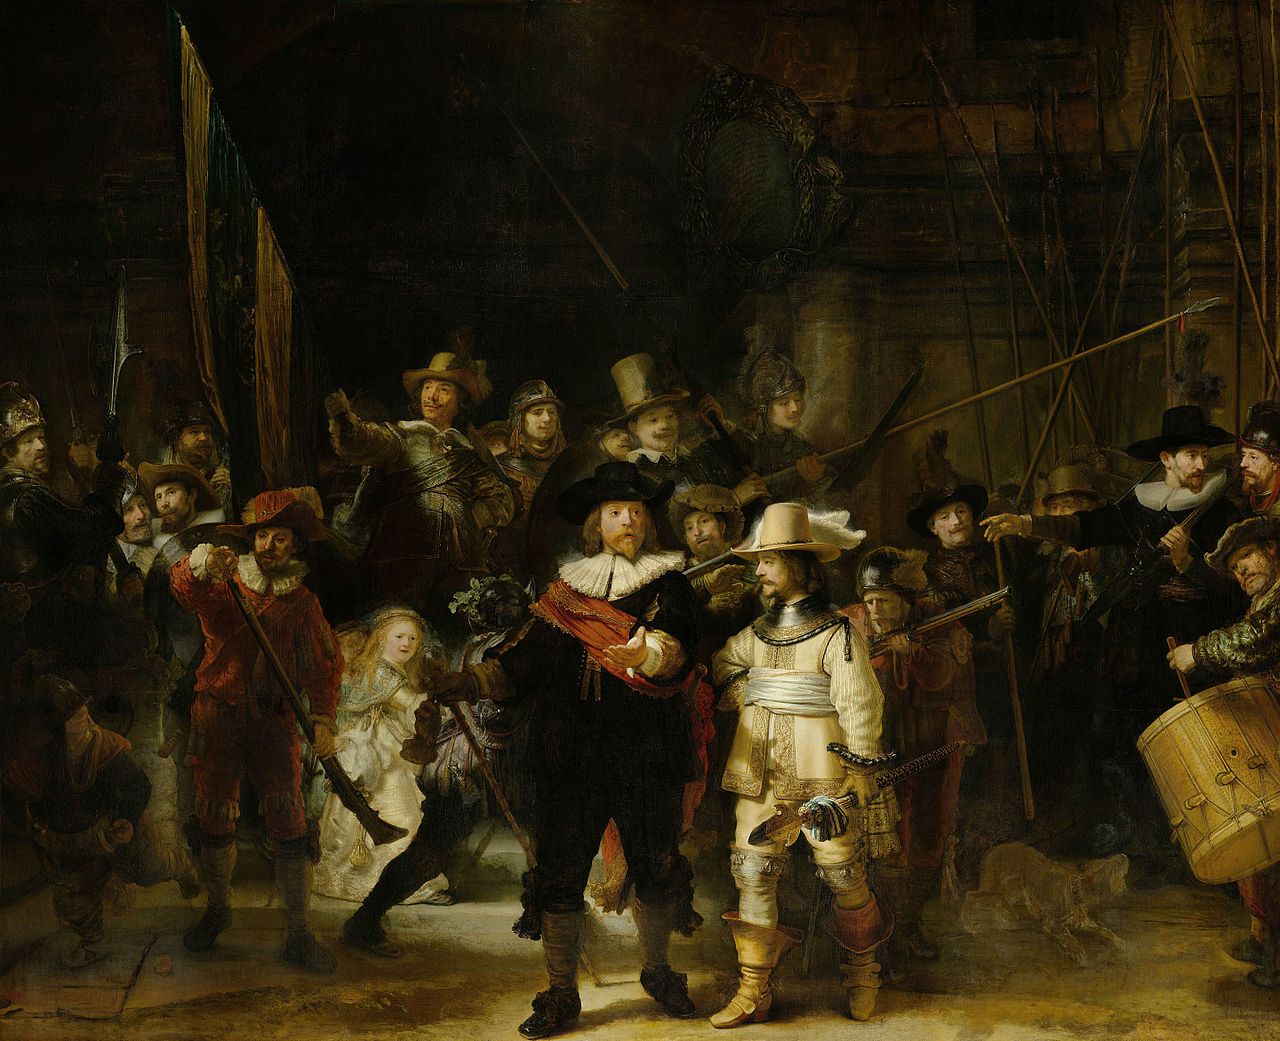 Wystawa "36 x Rembrandt" od soboty na Zamku Królewskim w Warszawie - Sztuka